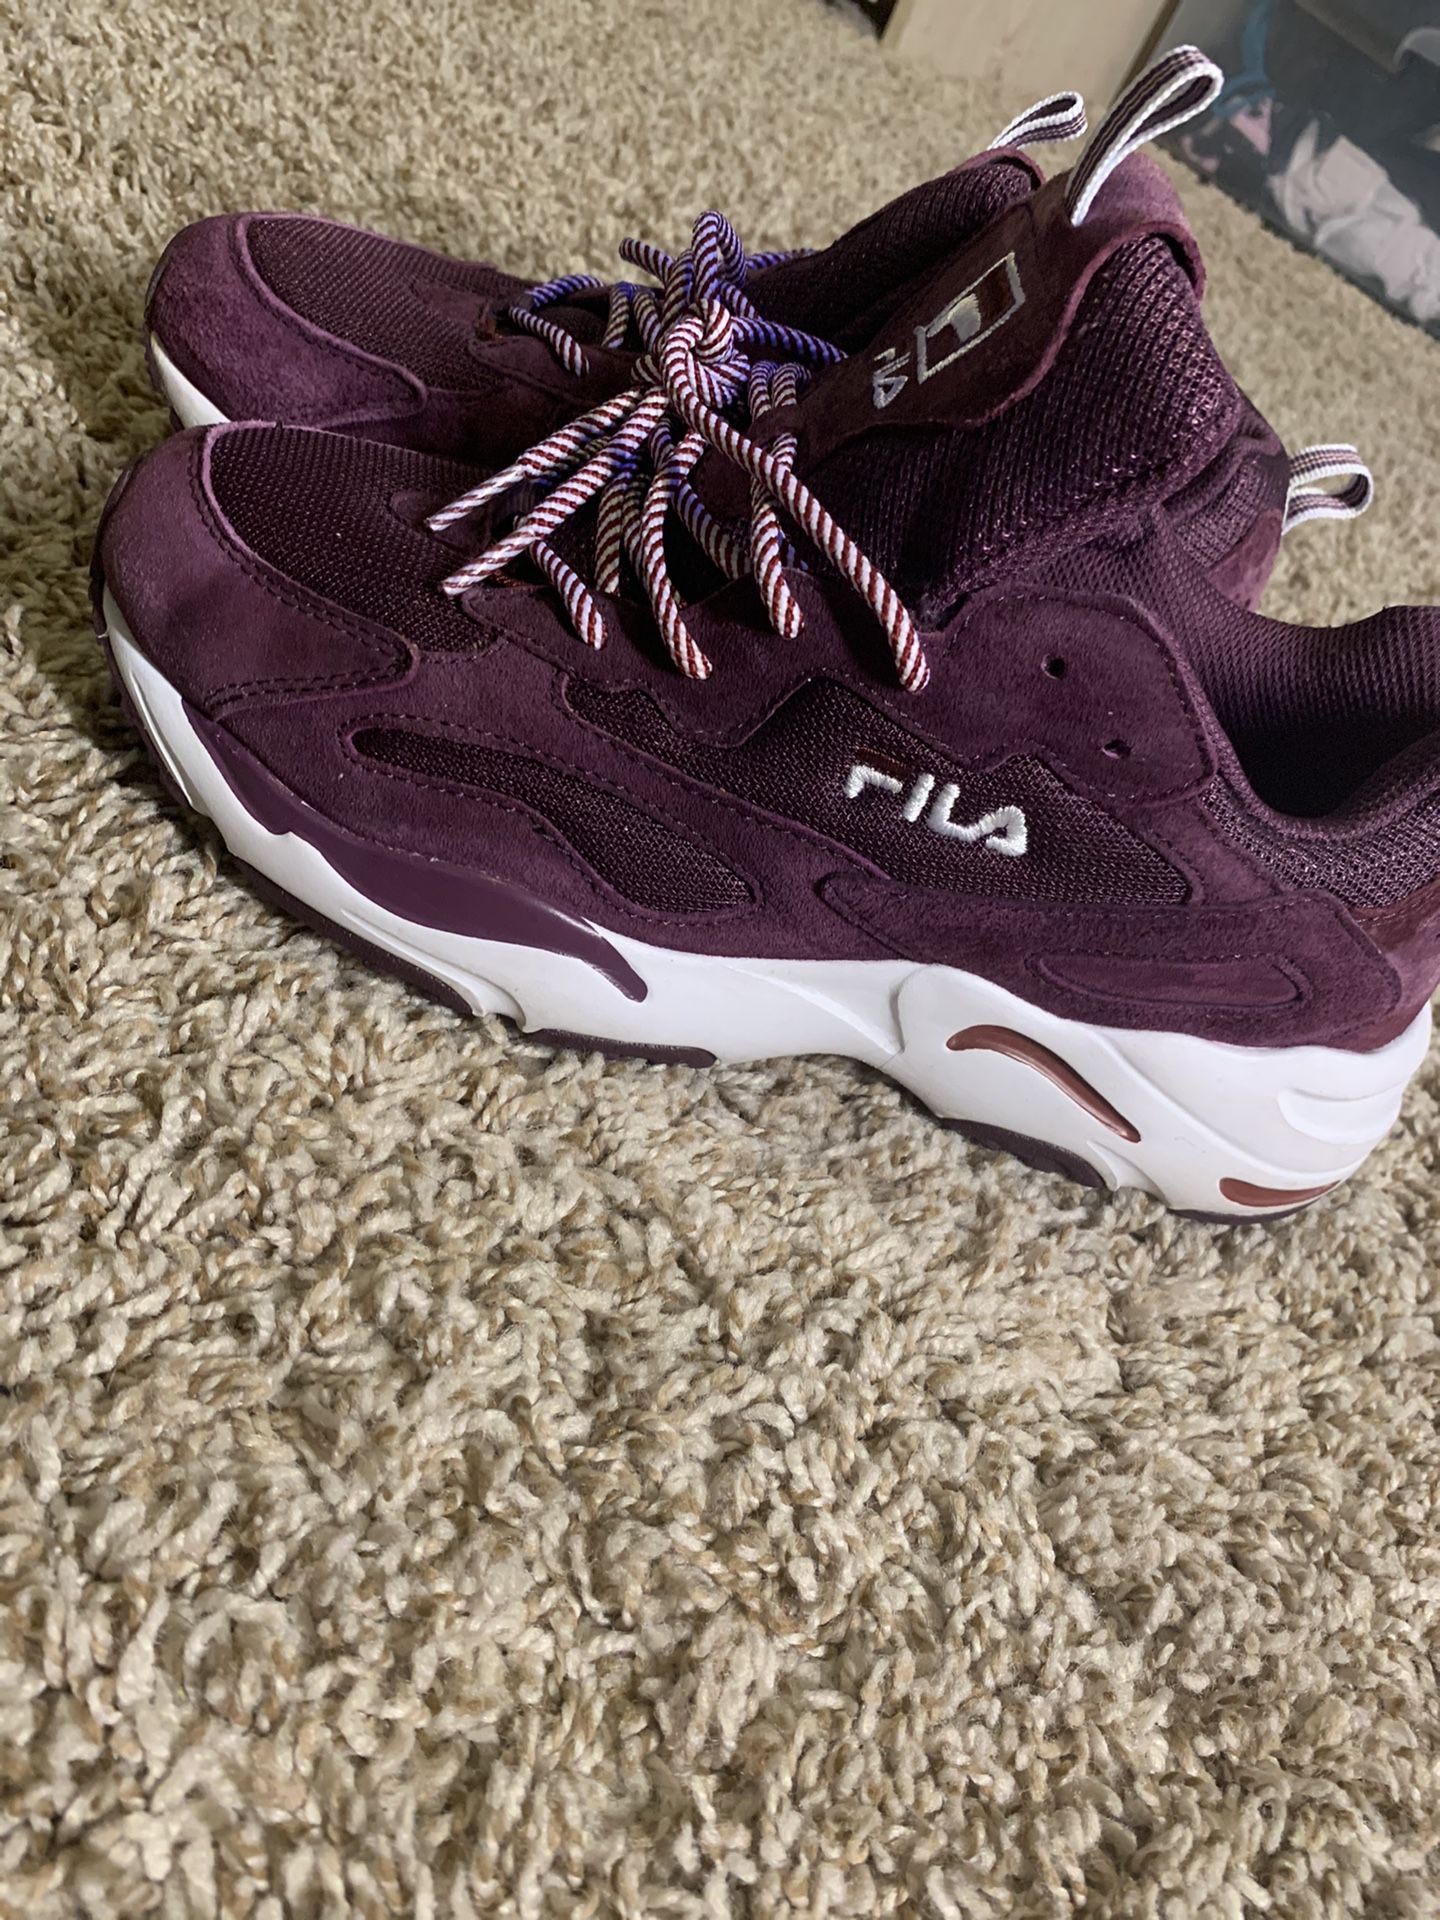 Size 10 Purple suede FILA